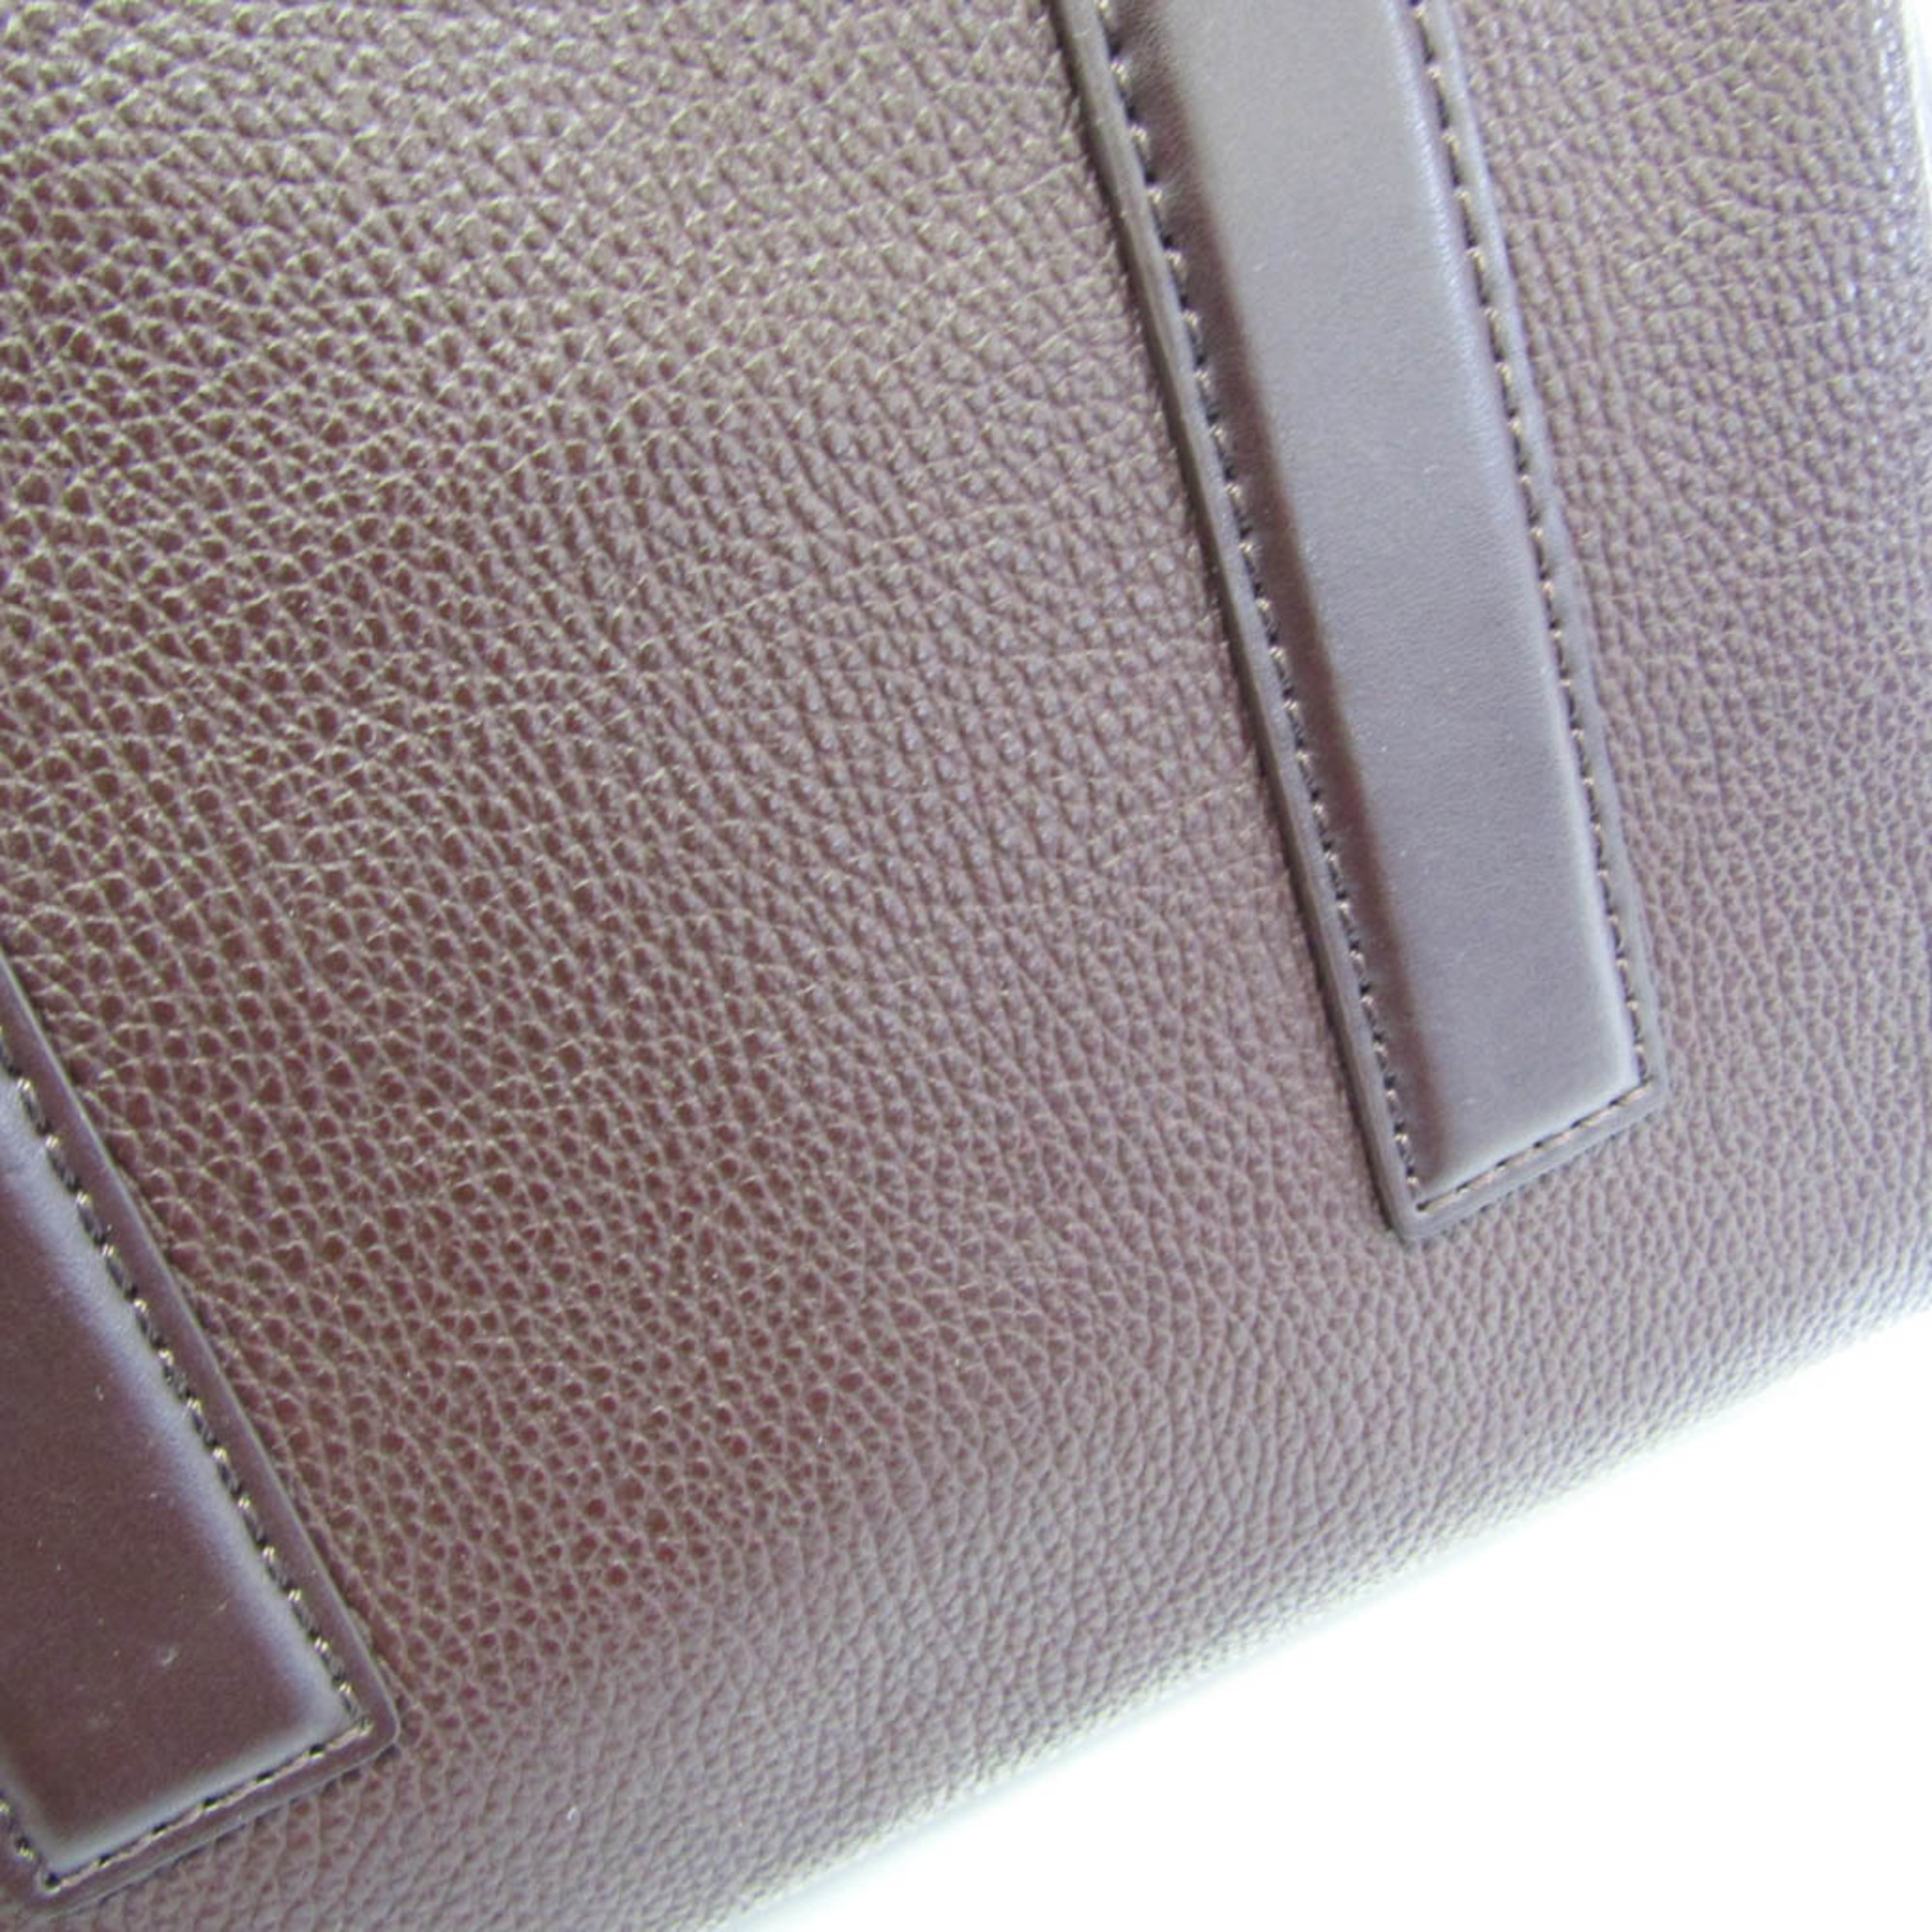 Paul Smith PWN950 Women's Leather Handbag,Shoulder Bag Bordeaux Brown